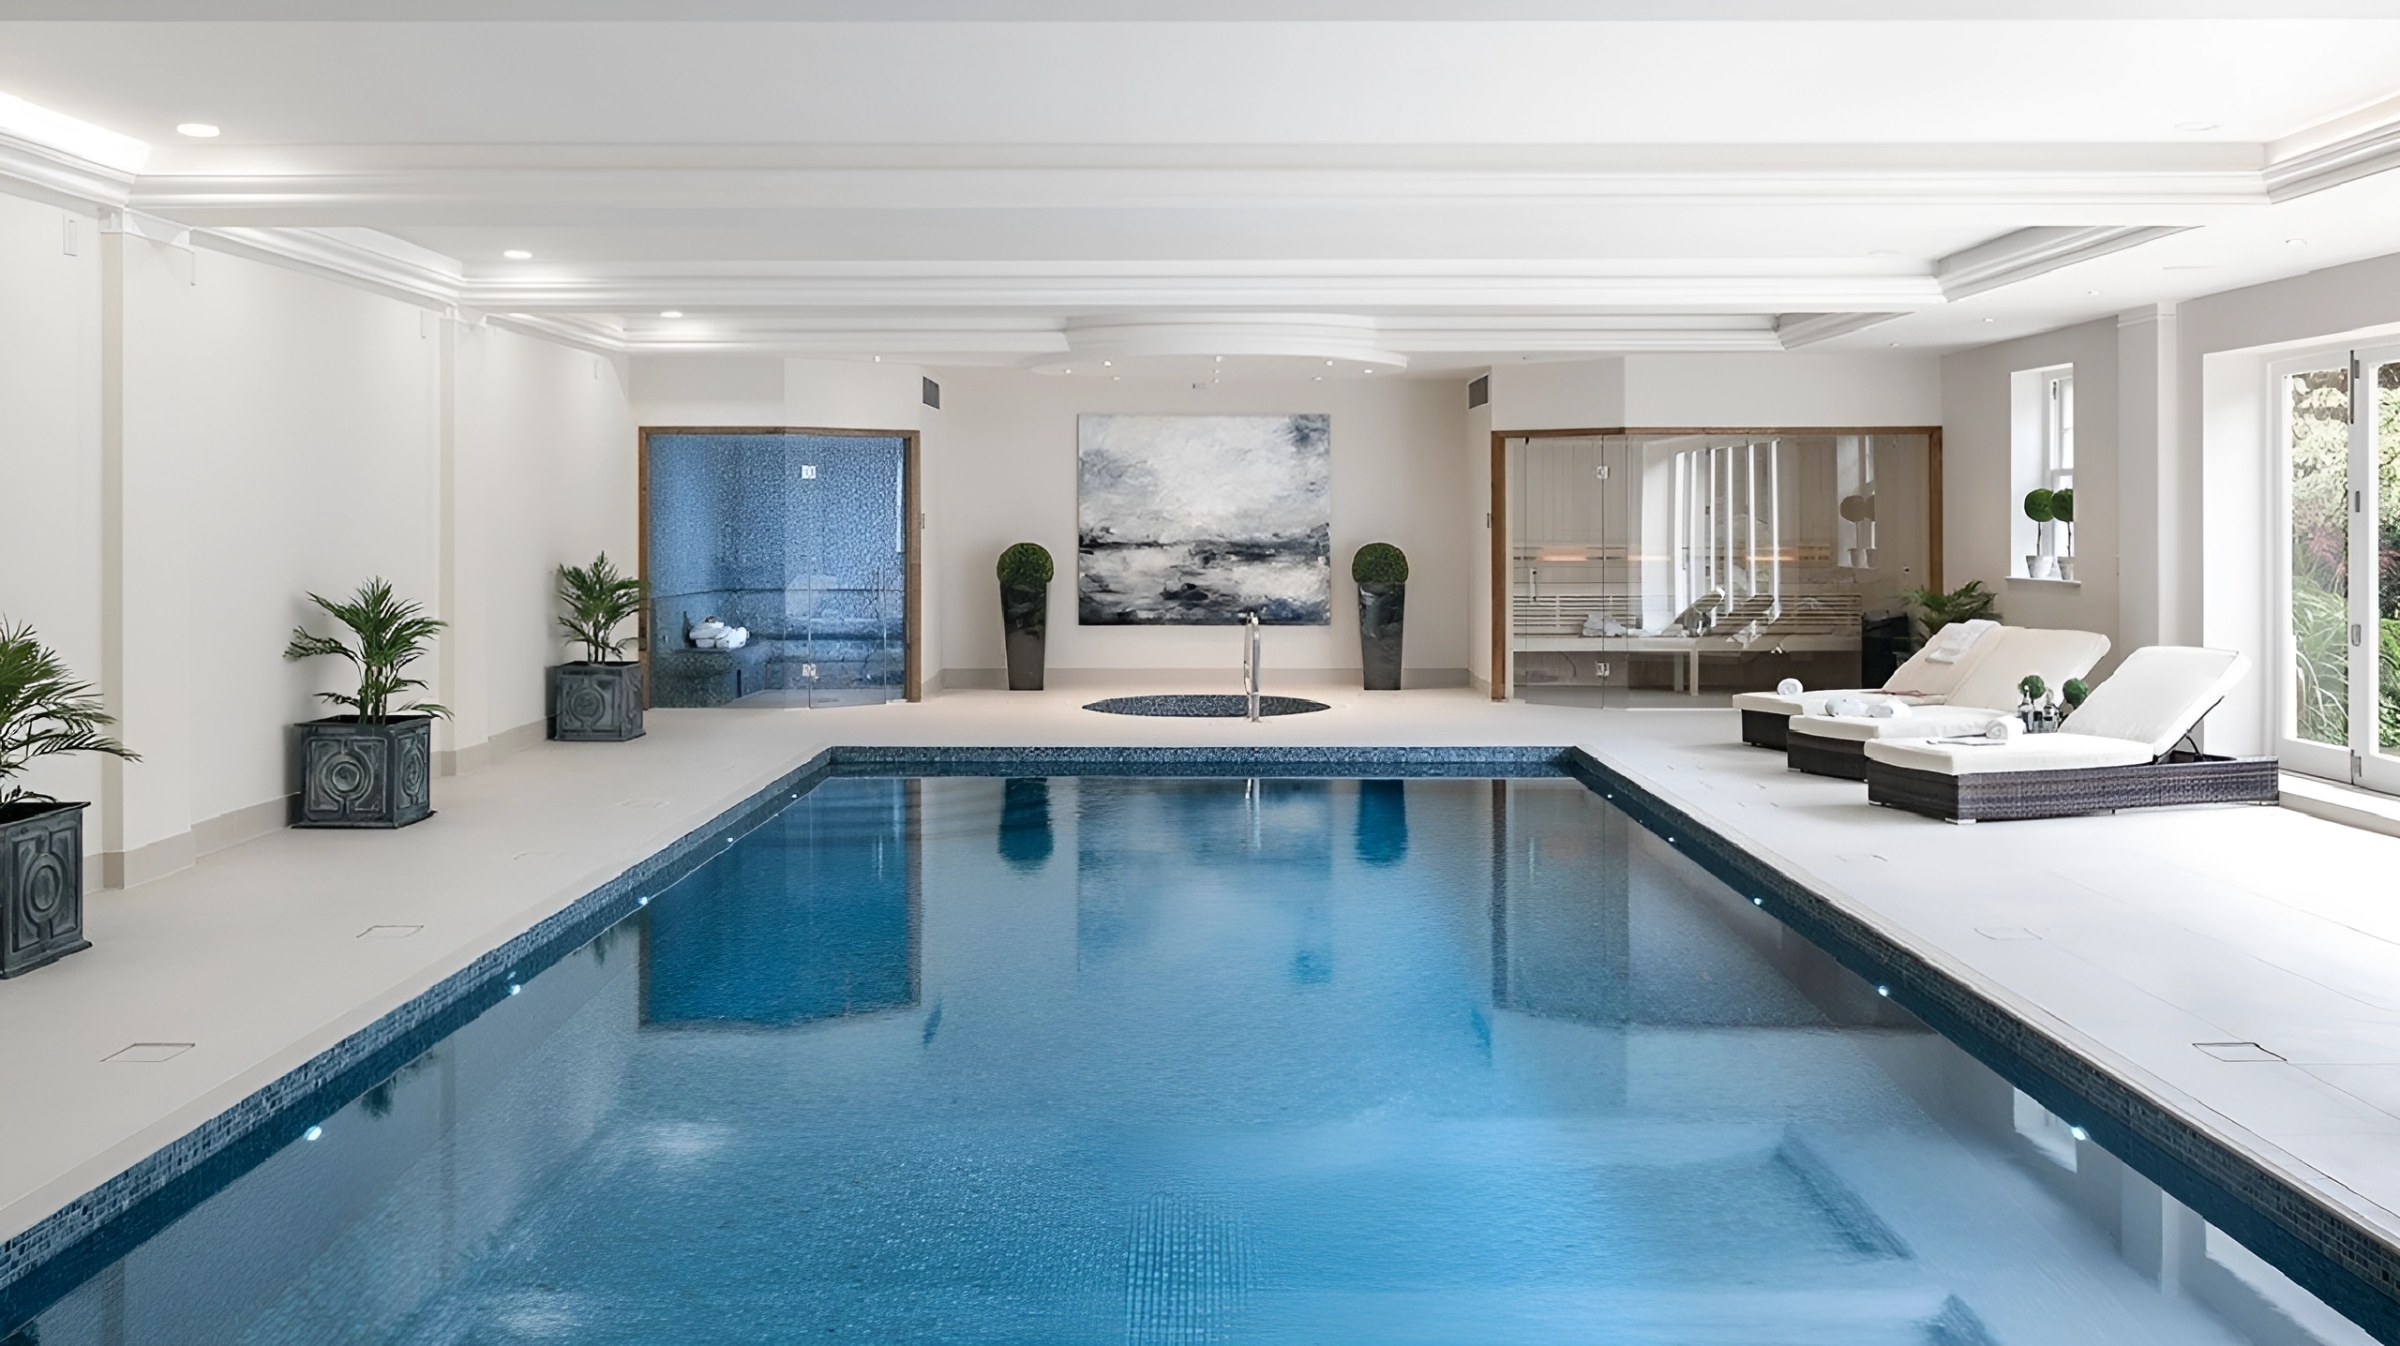 Mẫu biệt thự có hồ bơi trong nhà hiện đại, thông thoáng tựa như một căn phòng đầy tiện ích